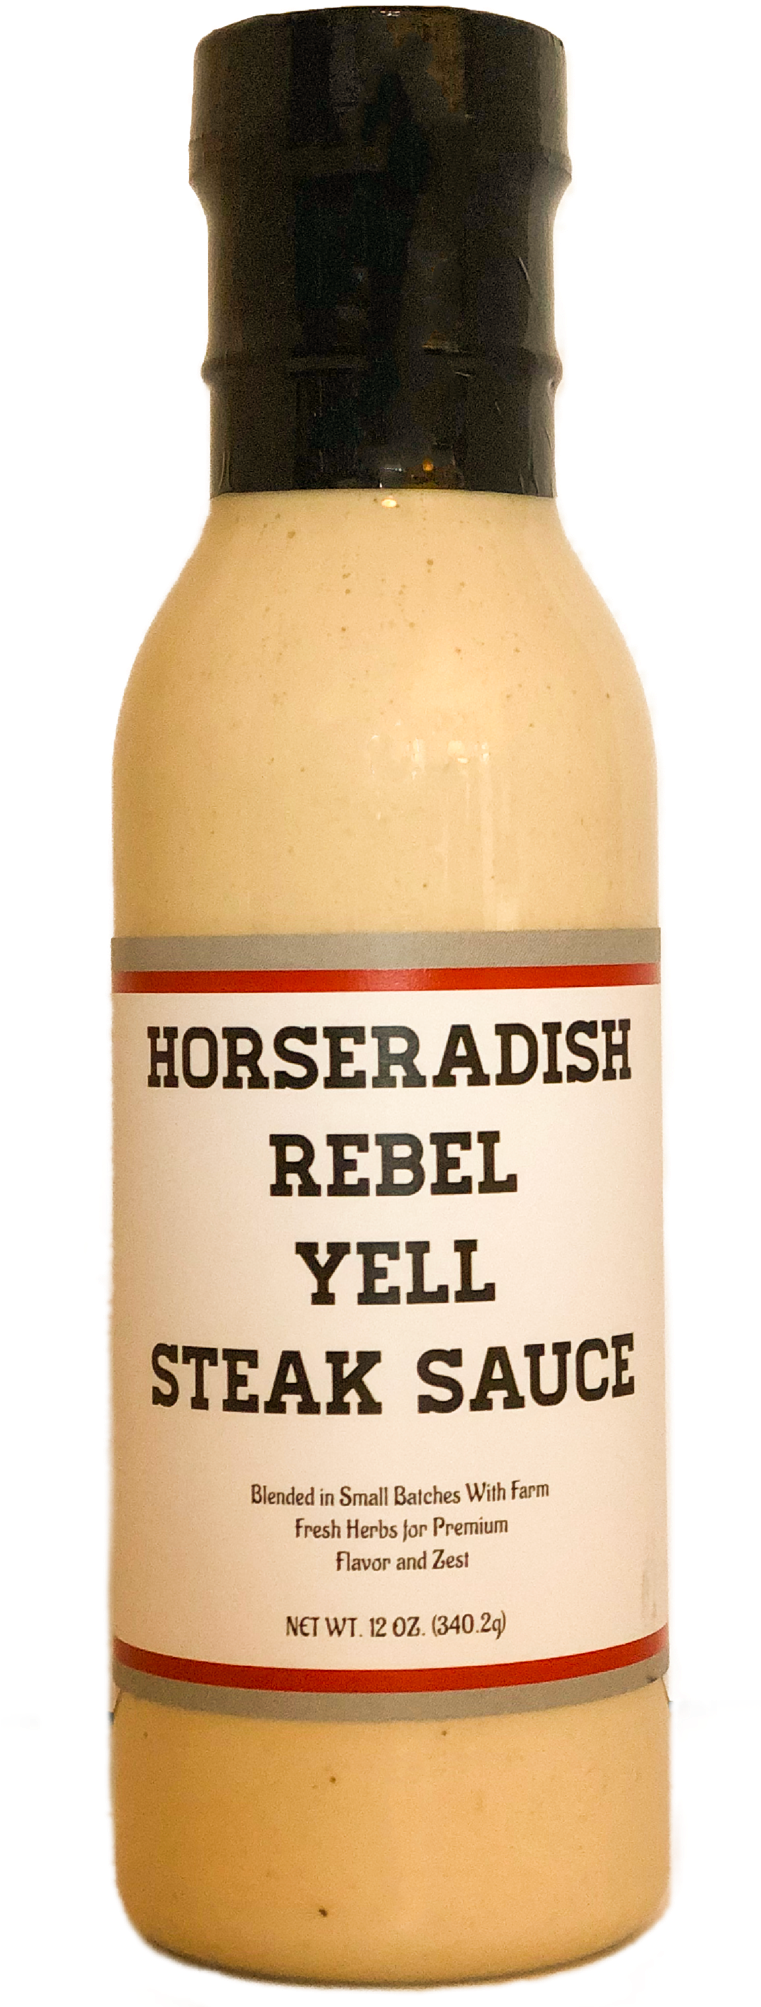 Horseradish Rebel Yell Steak Sauce Bottle